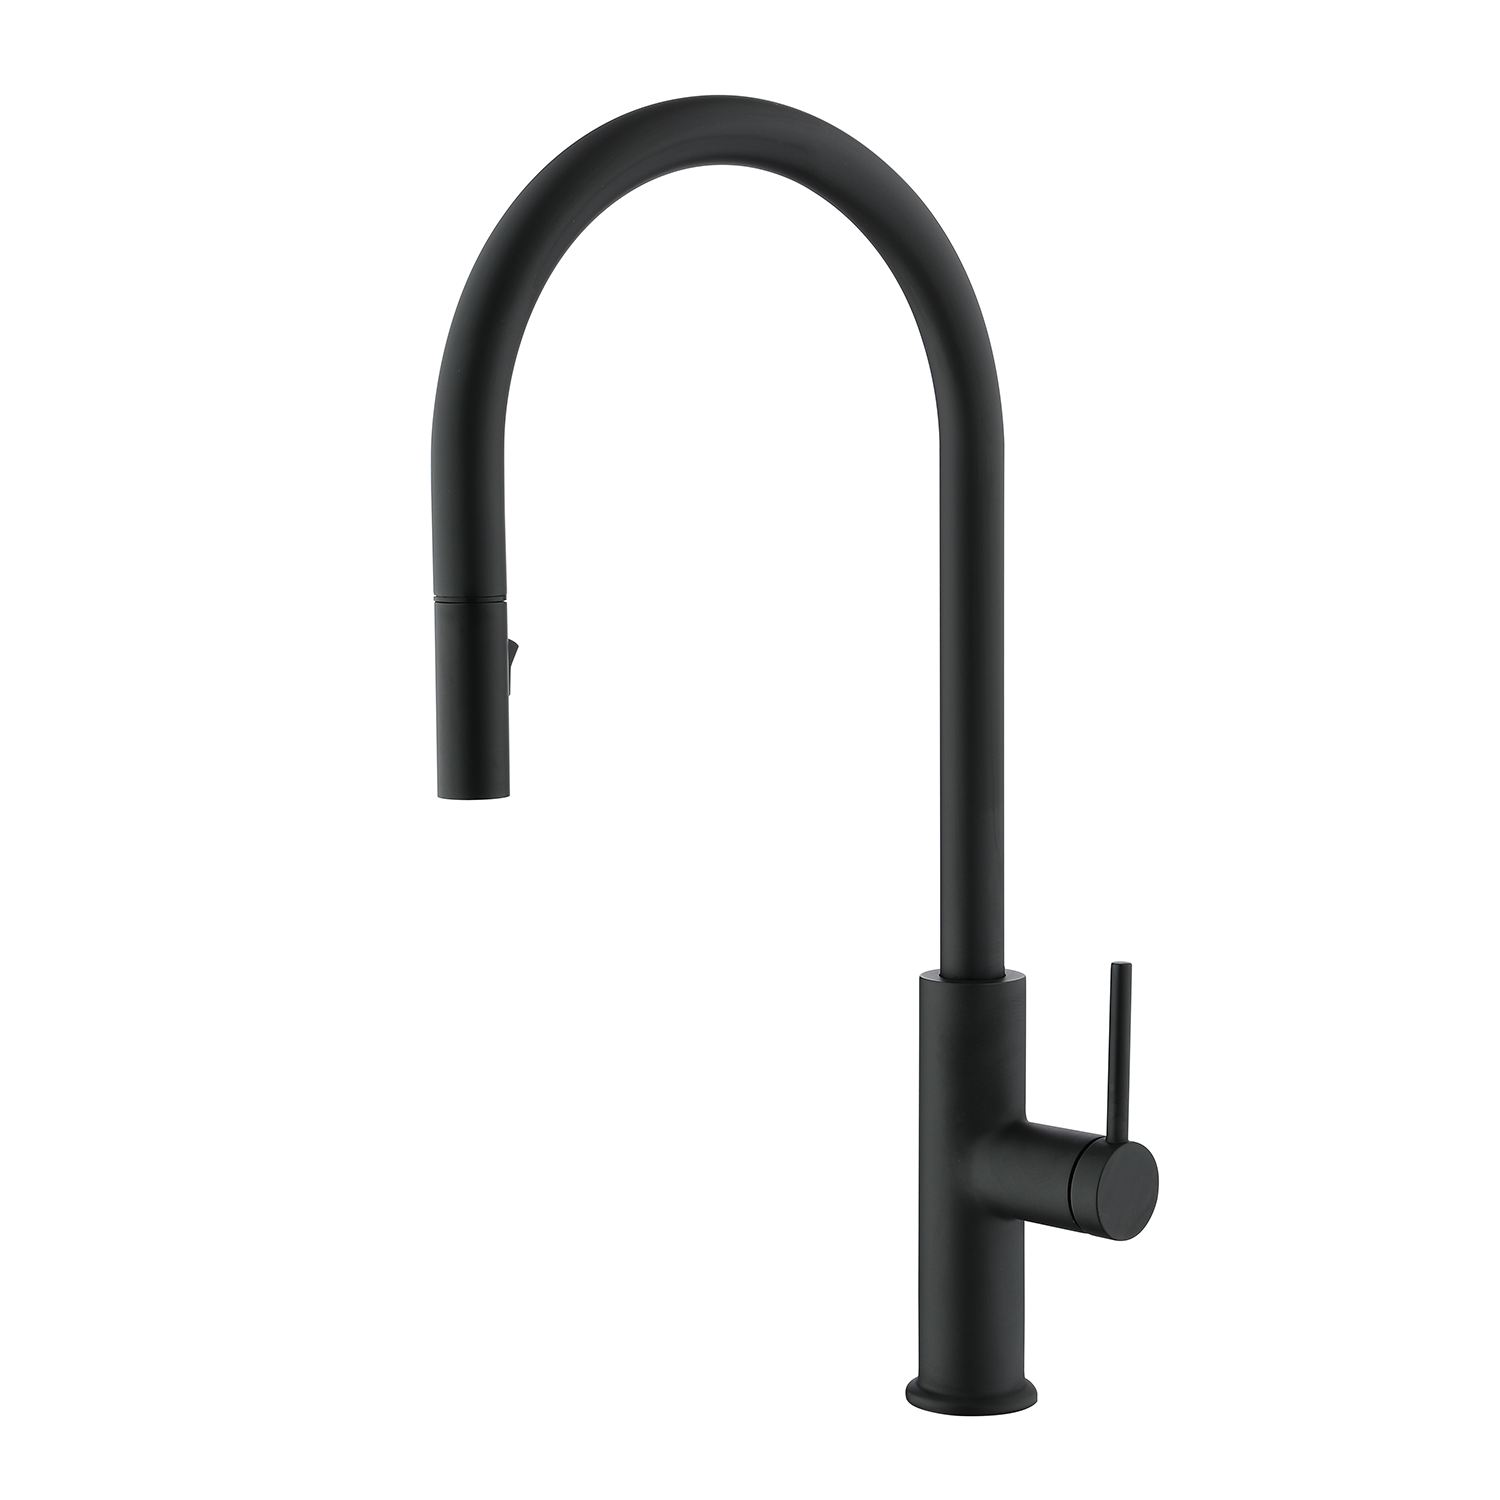 DAX Single Handle Pull Down Kitchen Faucet Matt Black Finish (DAX-8020058-BL)